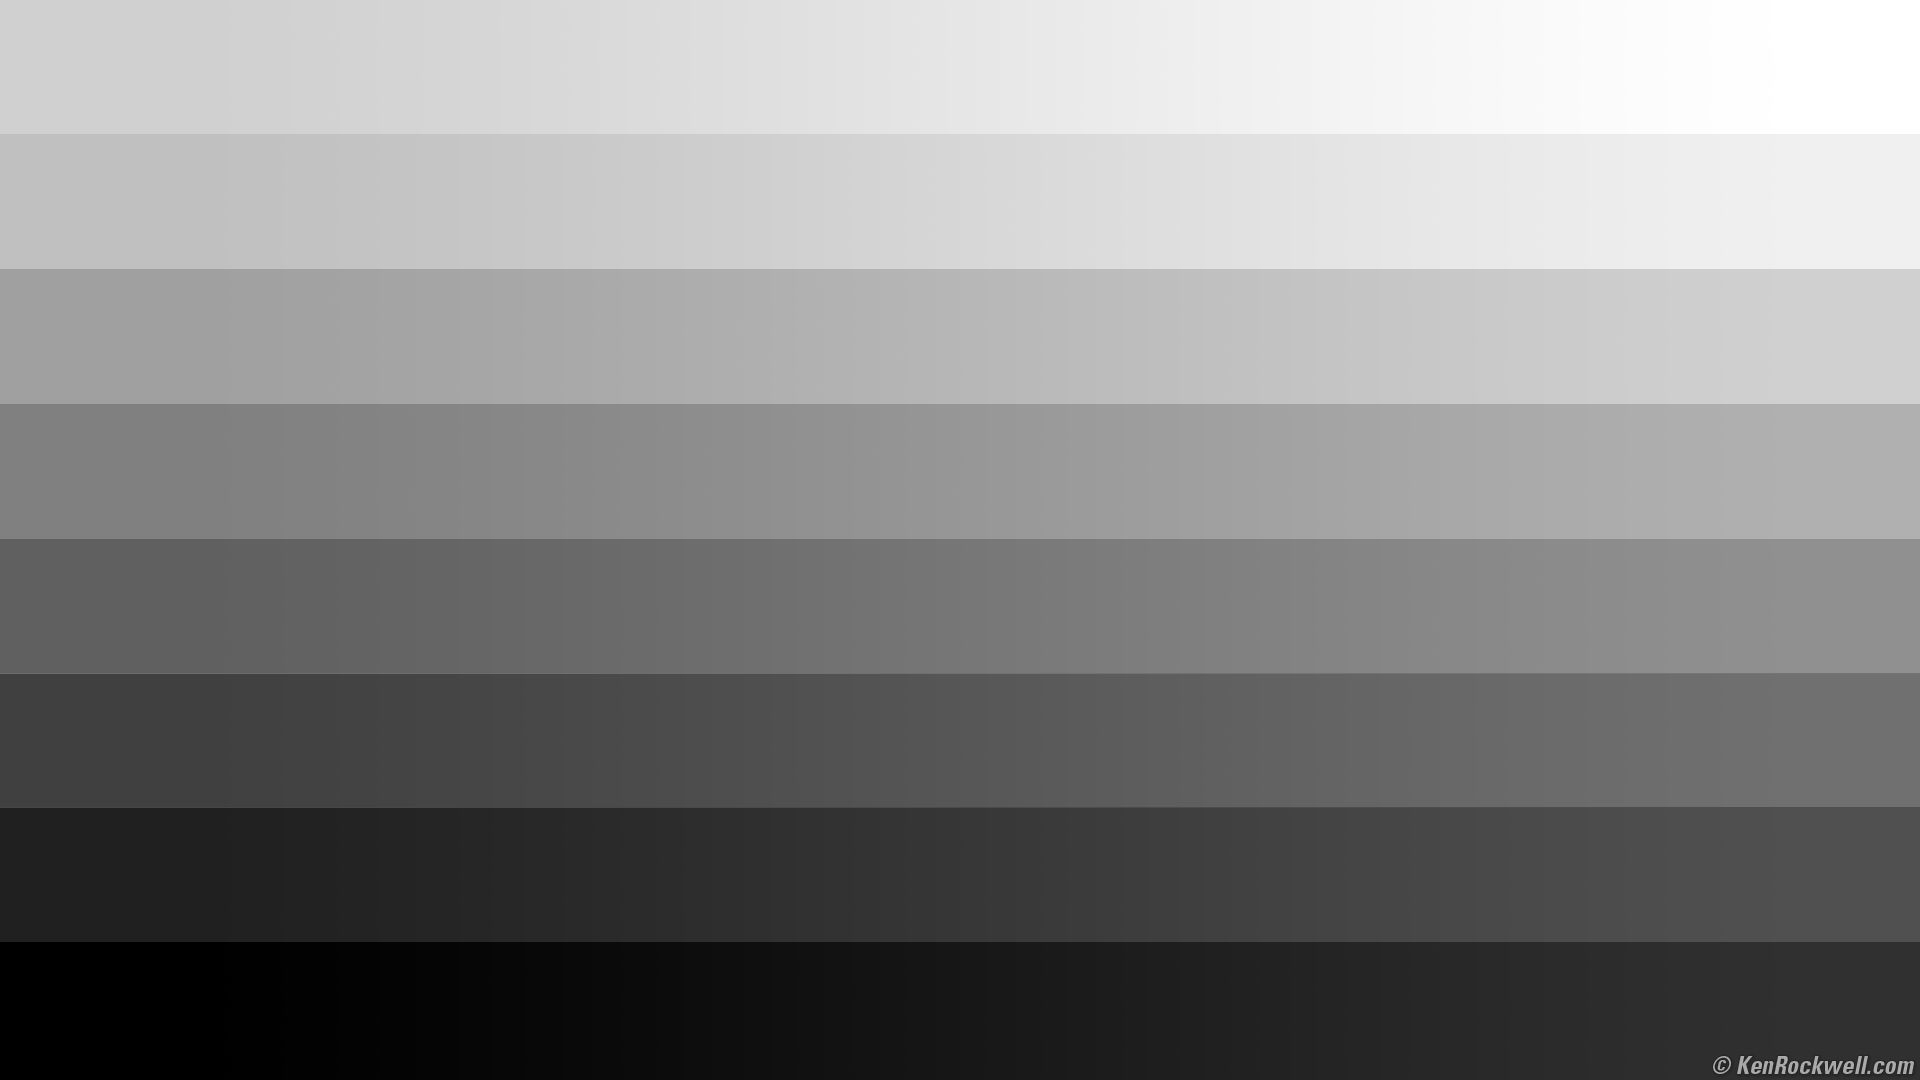 Почему видео серое. Градация серого цвета. Градиент от черного к белому. Оттенки от белого до черного. Тёмно-серый цвет.